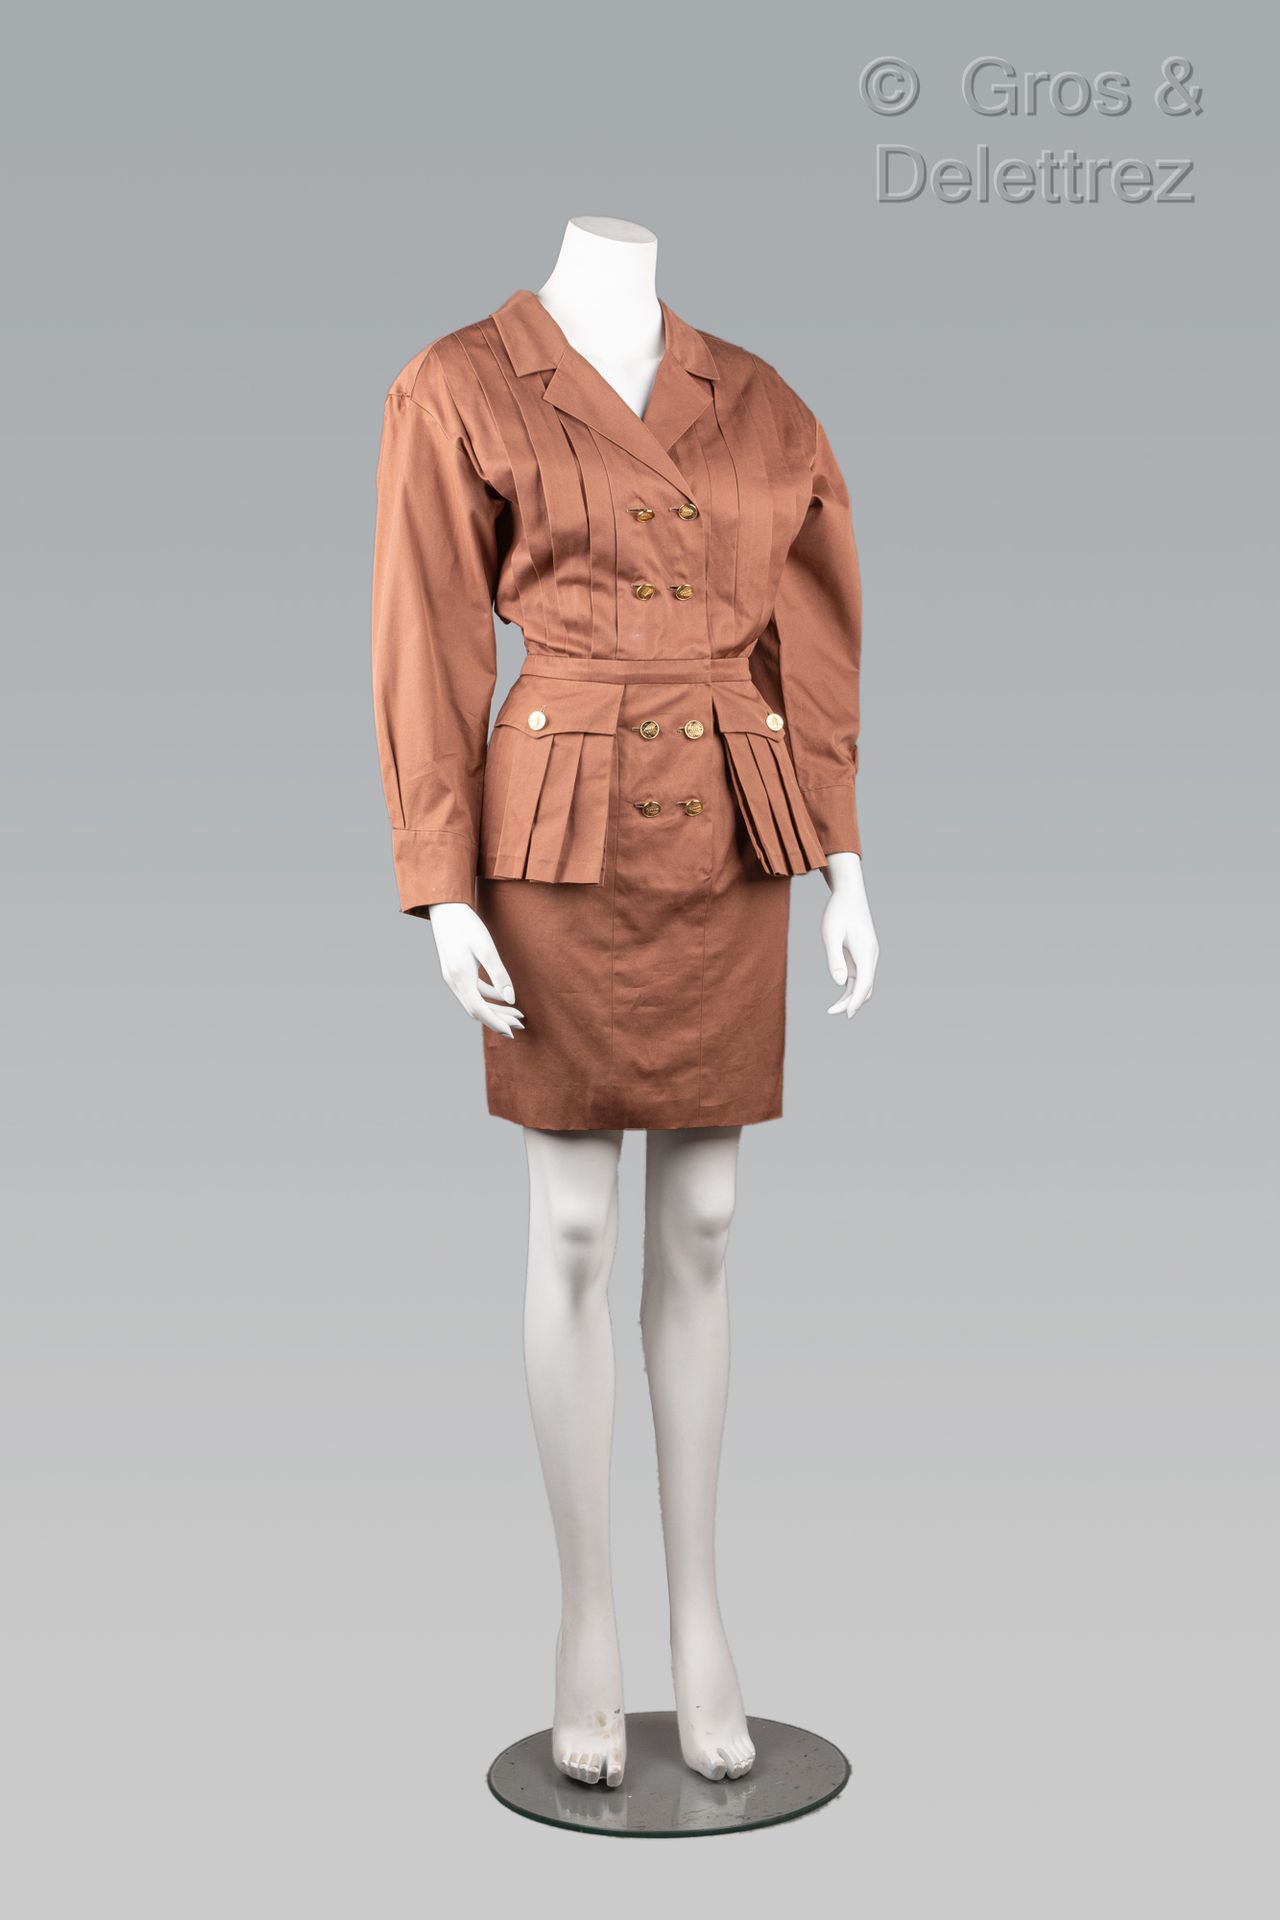 Null 卡尔-拉格斐的香奈儿专卖店

约1985年

双排扣连衣裙，部分褶皱的可可棉，披肩领，以玉米穗为主题的金色金属双扣，两个大贴袋，长袖。T.38.白色标&hellip;